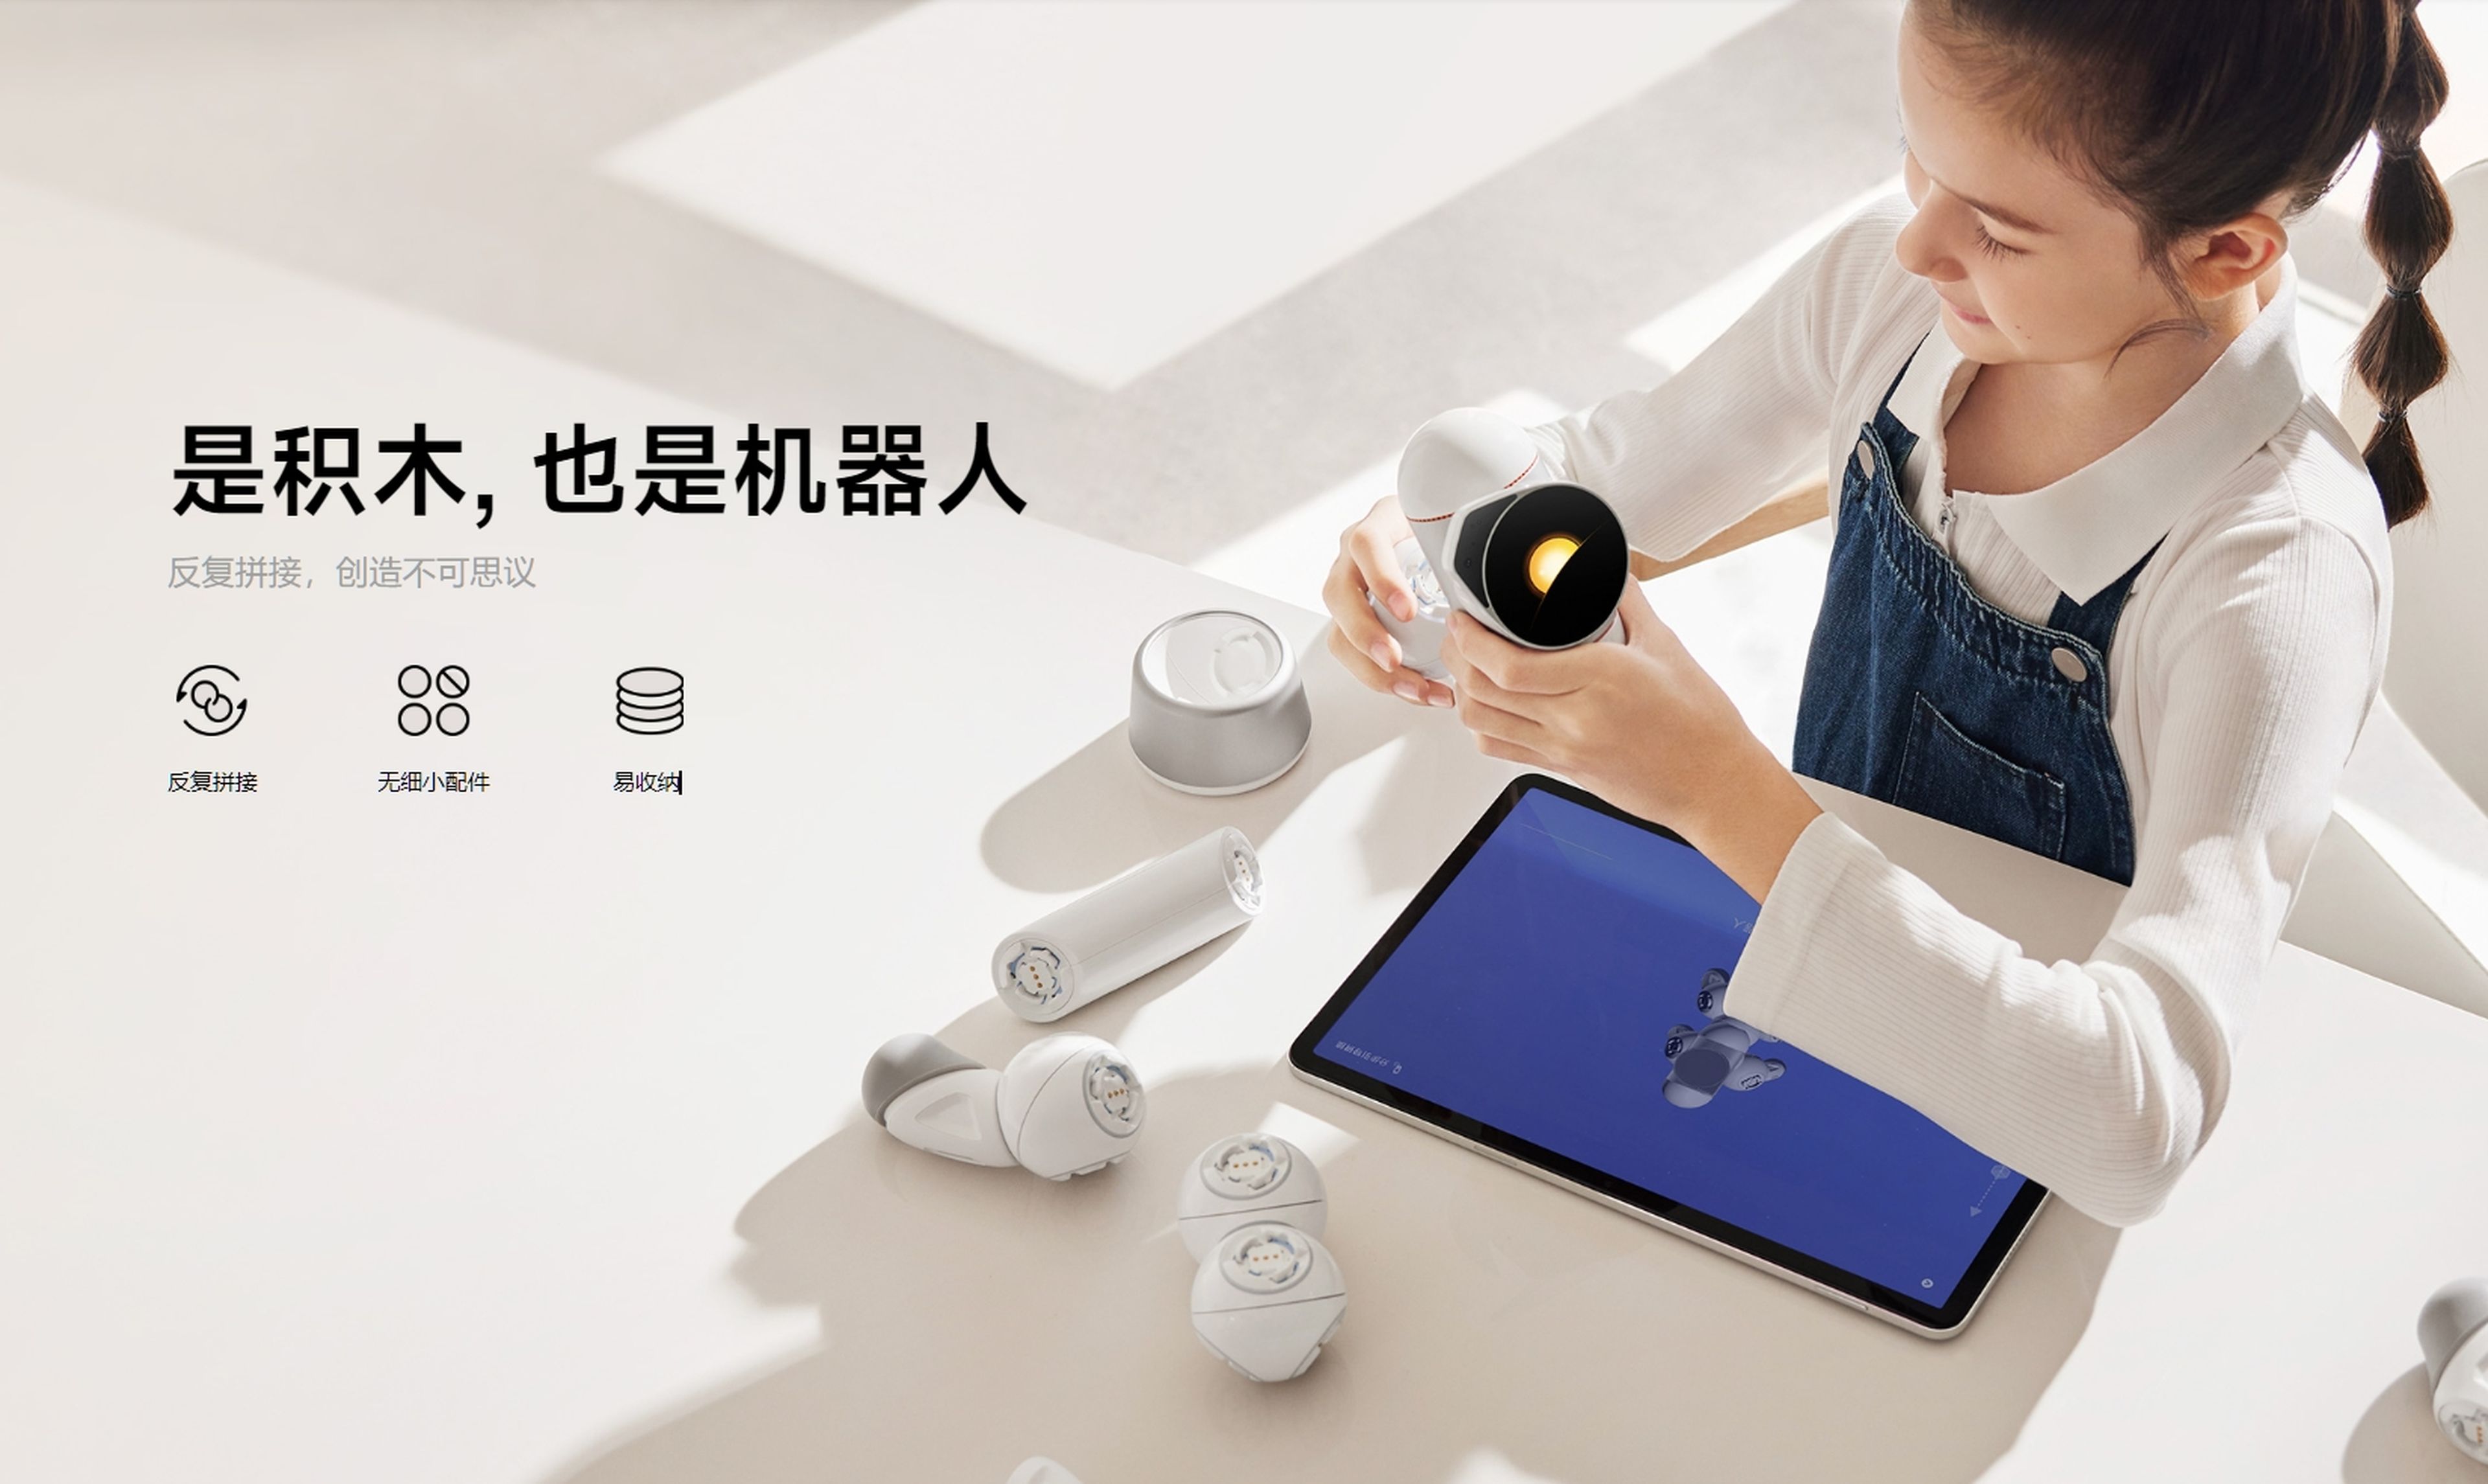 El nuevo robot modular de Xiaomi lo montas tú como más te guste